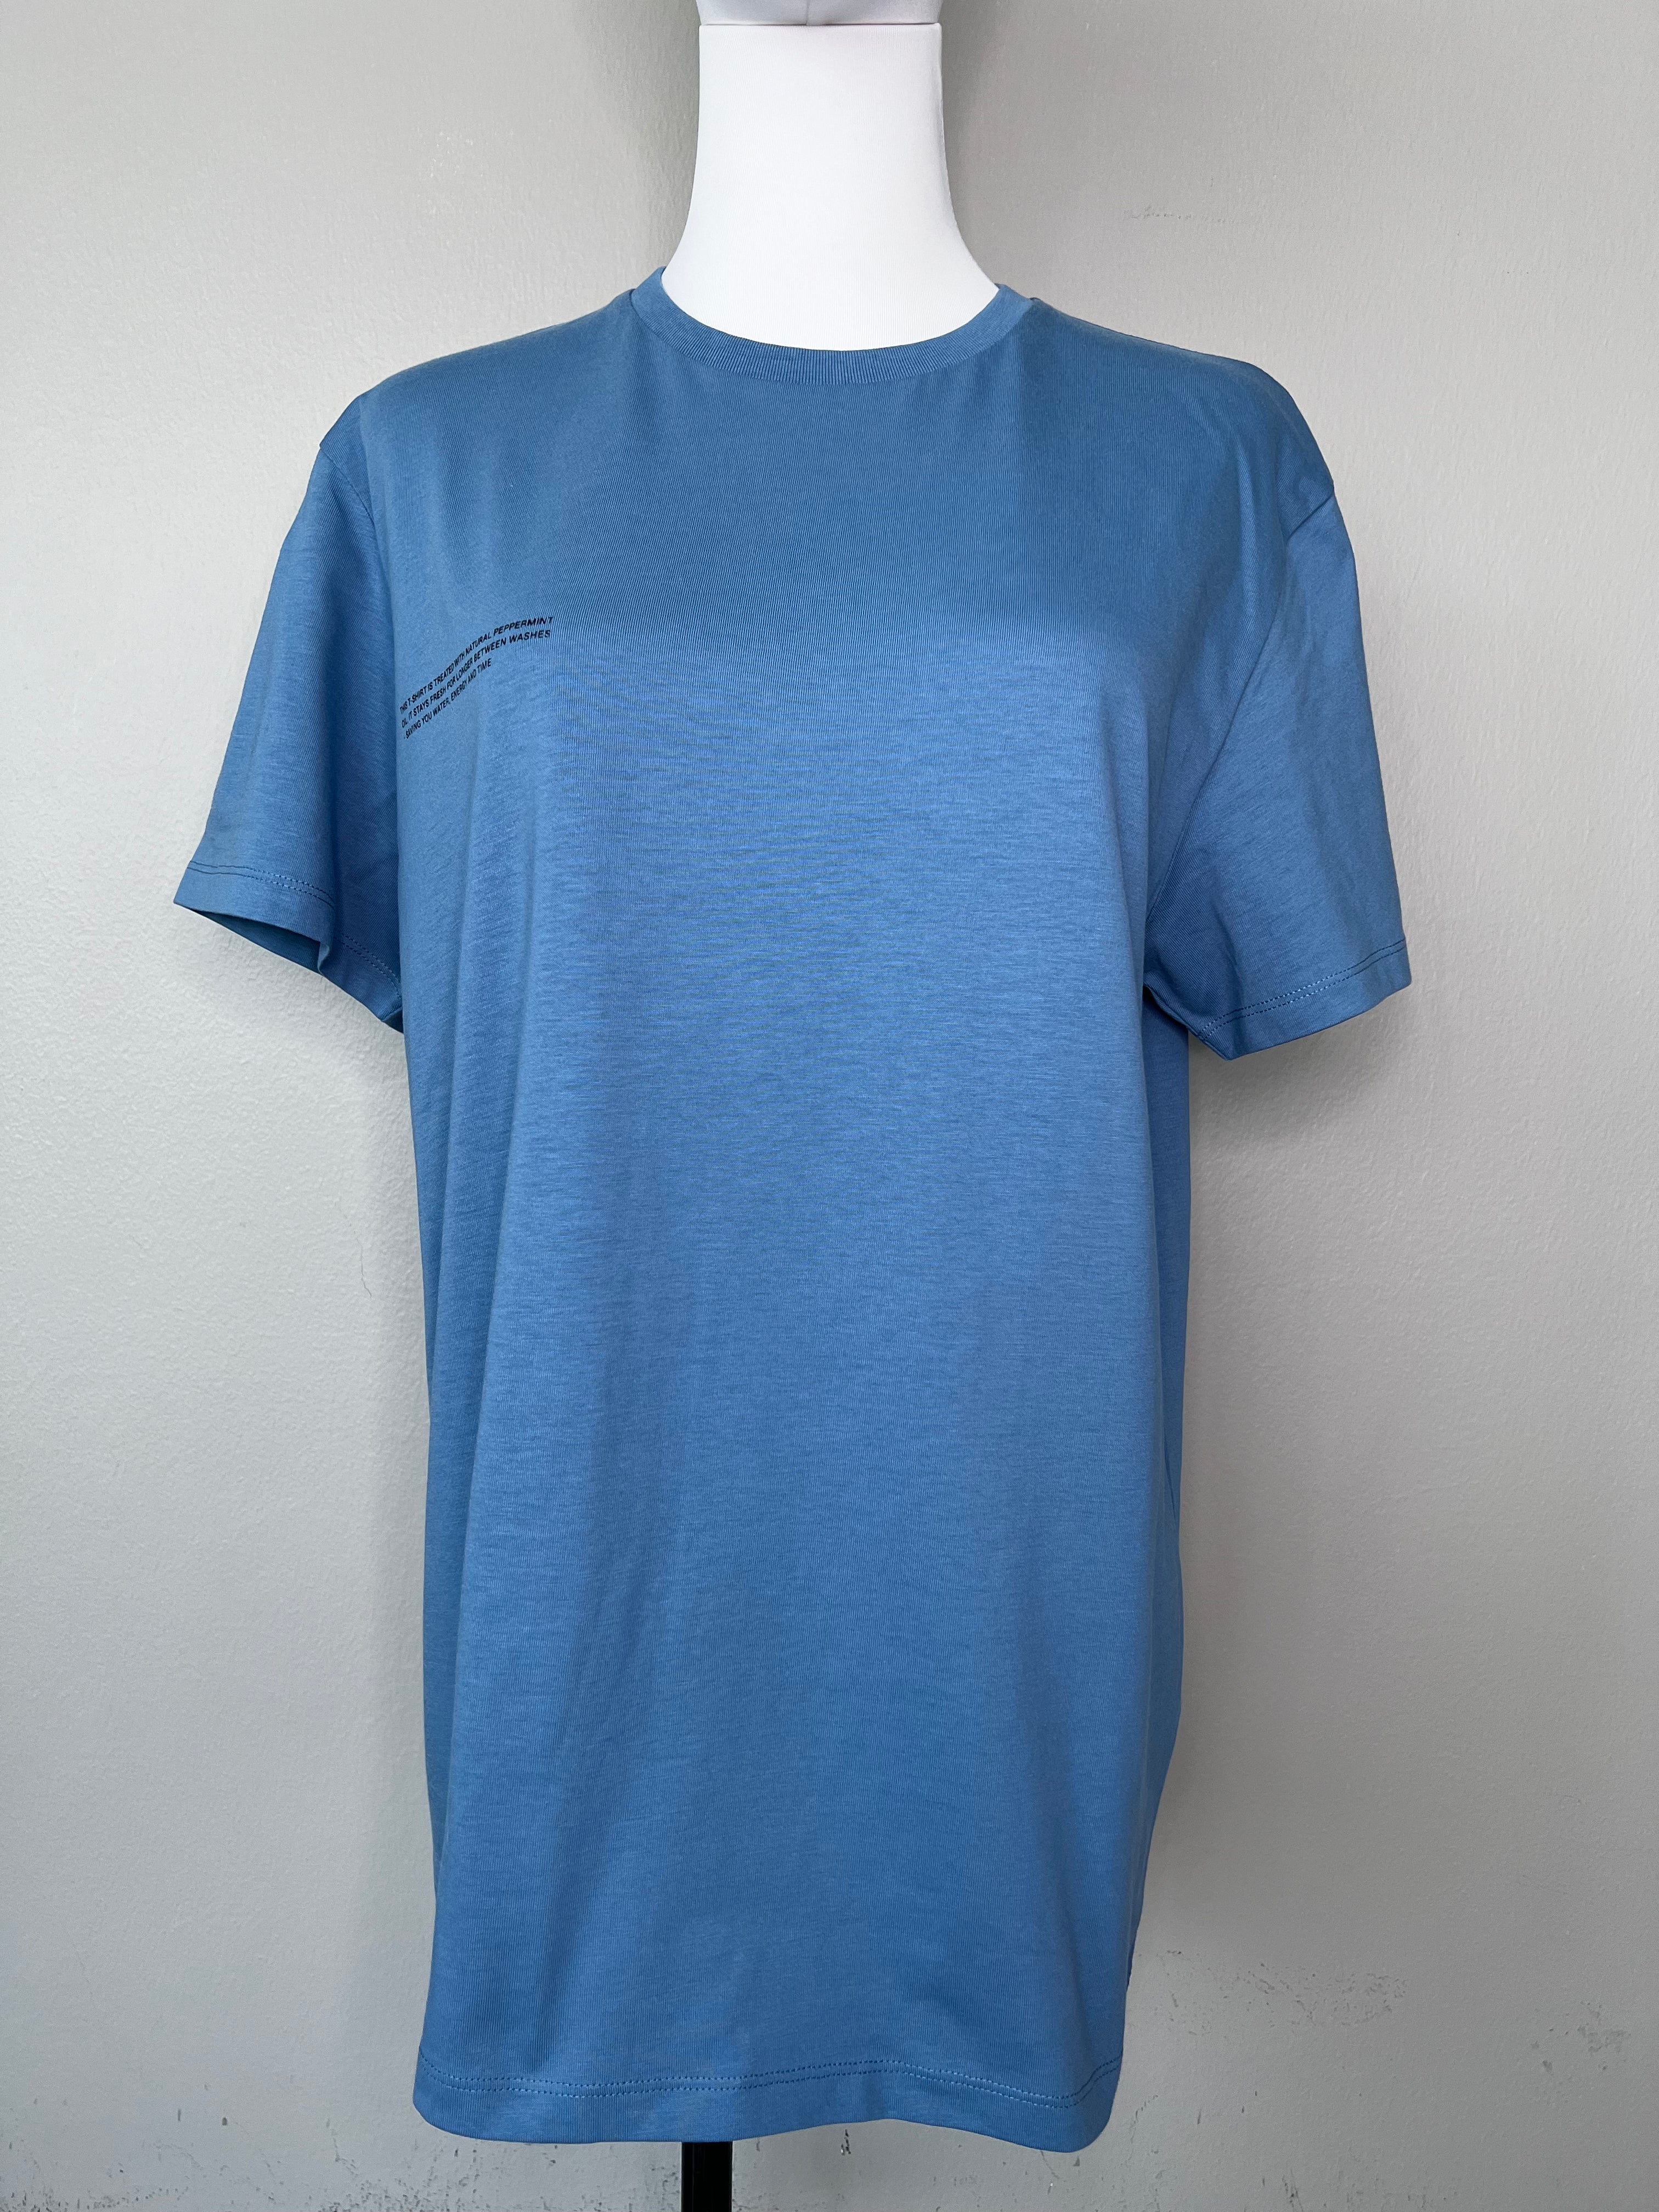 Greyish blue plain short sleeve shirt - PANGAIA